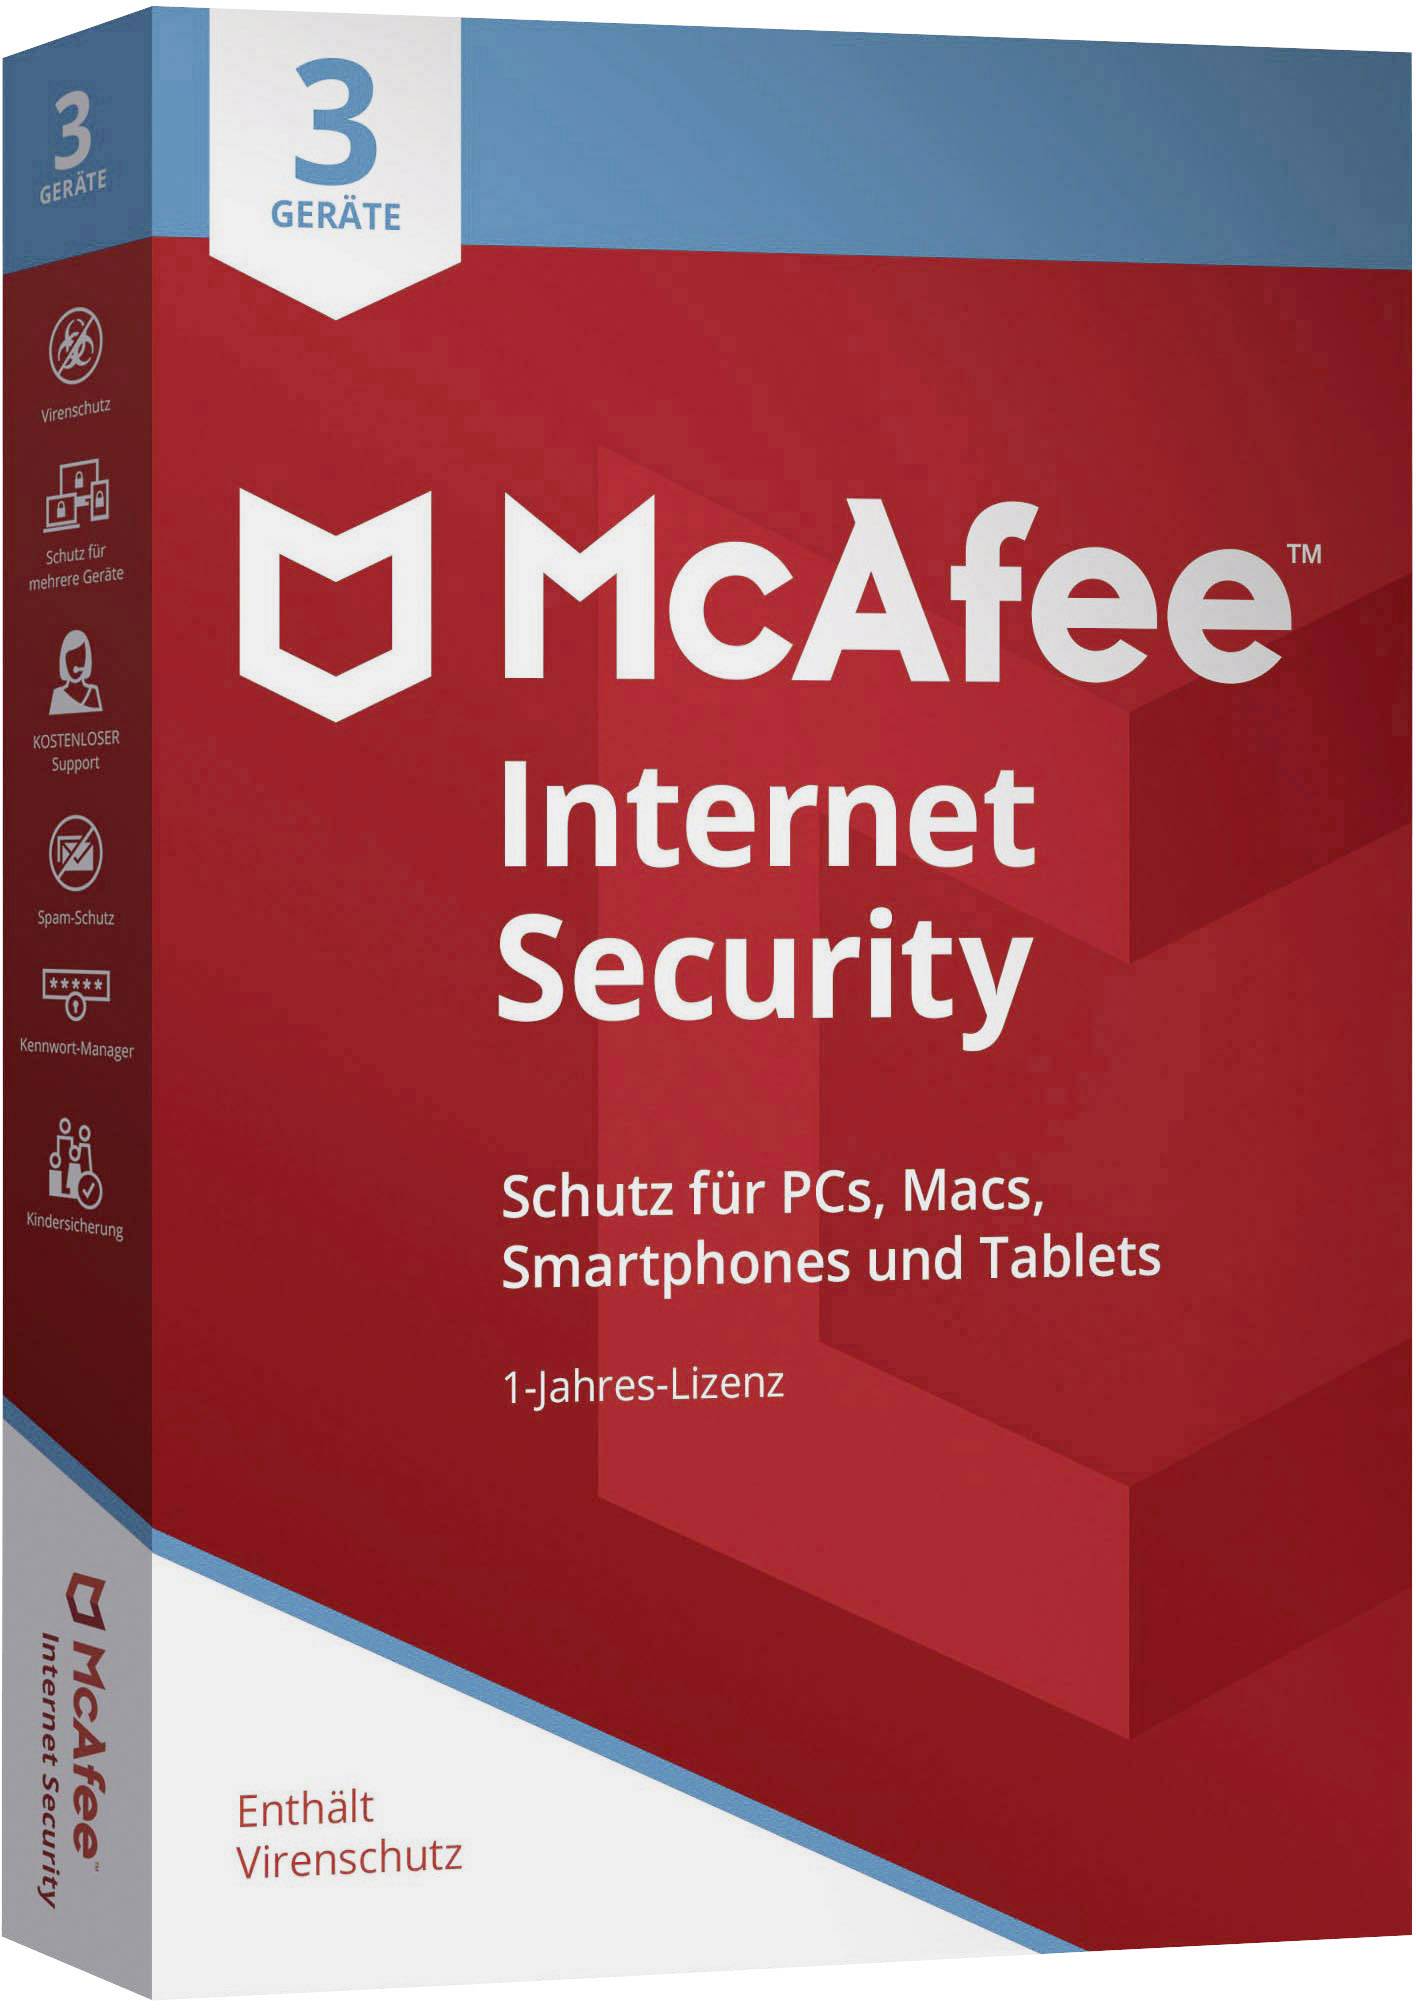 mcafee antivirus free download full version 2020